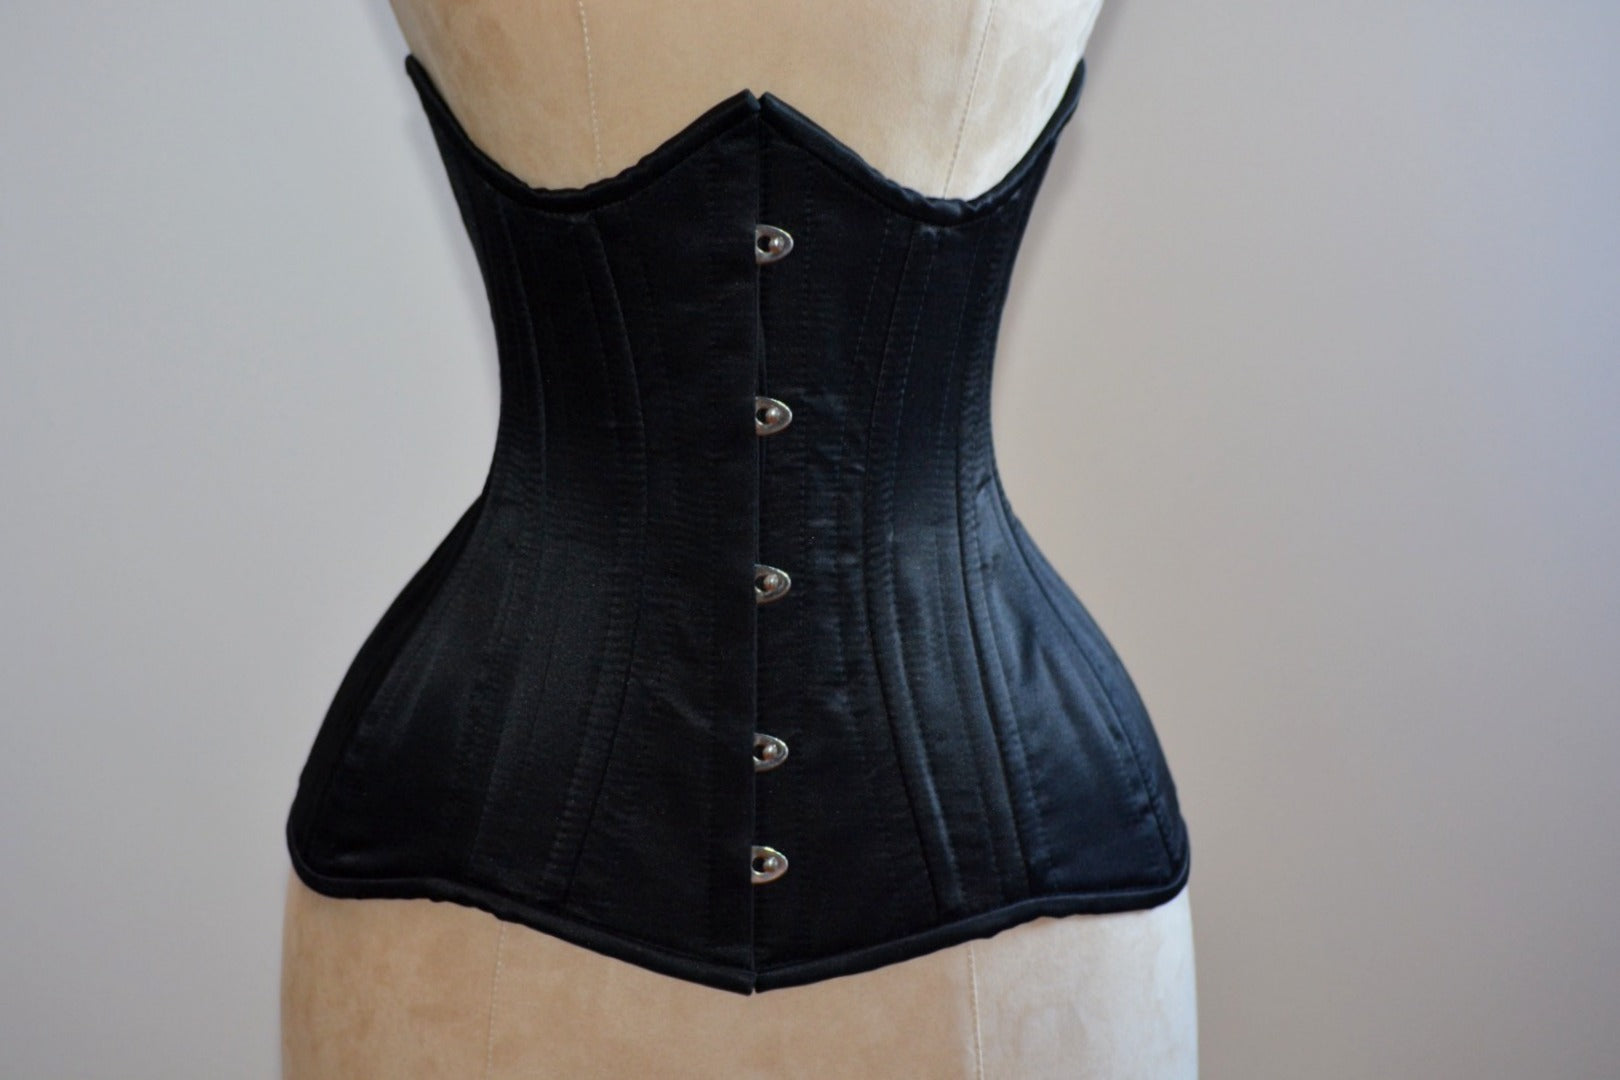 https://corsettery.com/cdn/shop/products/IMG_2532.JPG?v=1671705734